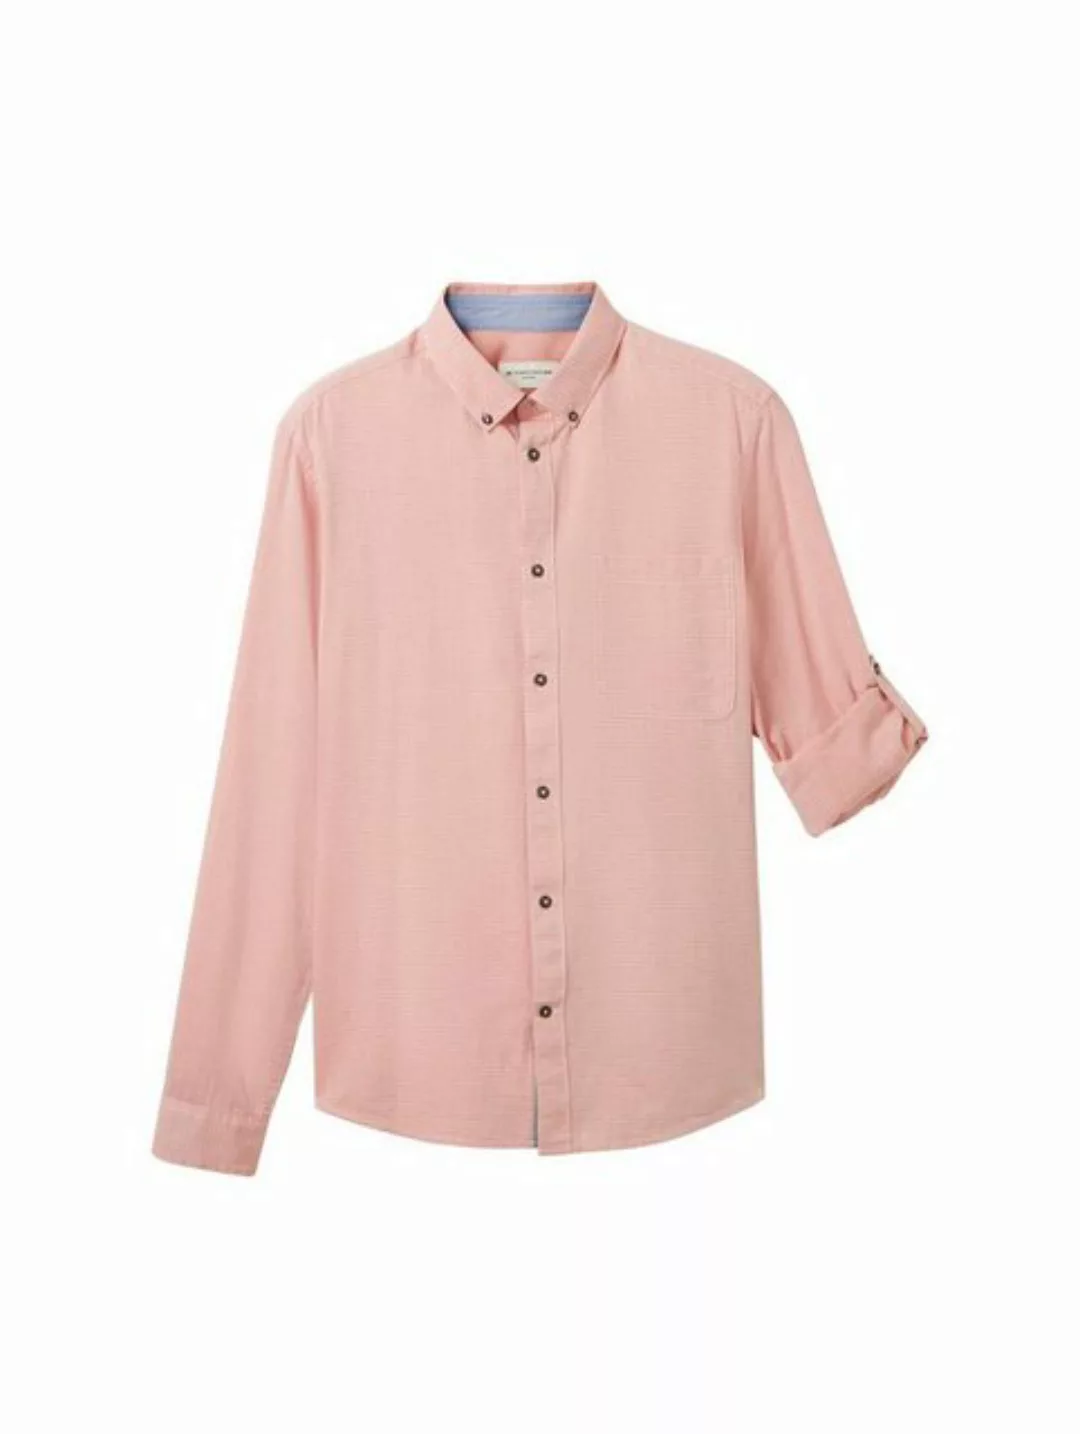 TOM TAILOR T-Shirt fitted structured shirt, orange horizontal structure günstig online kaufen